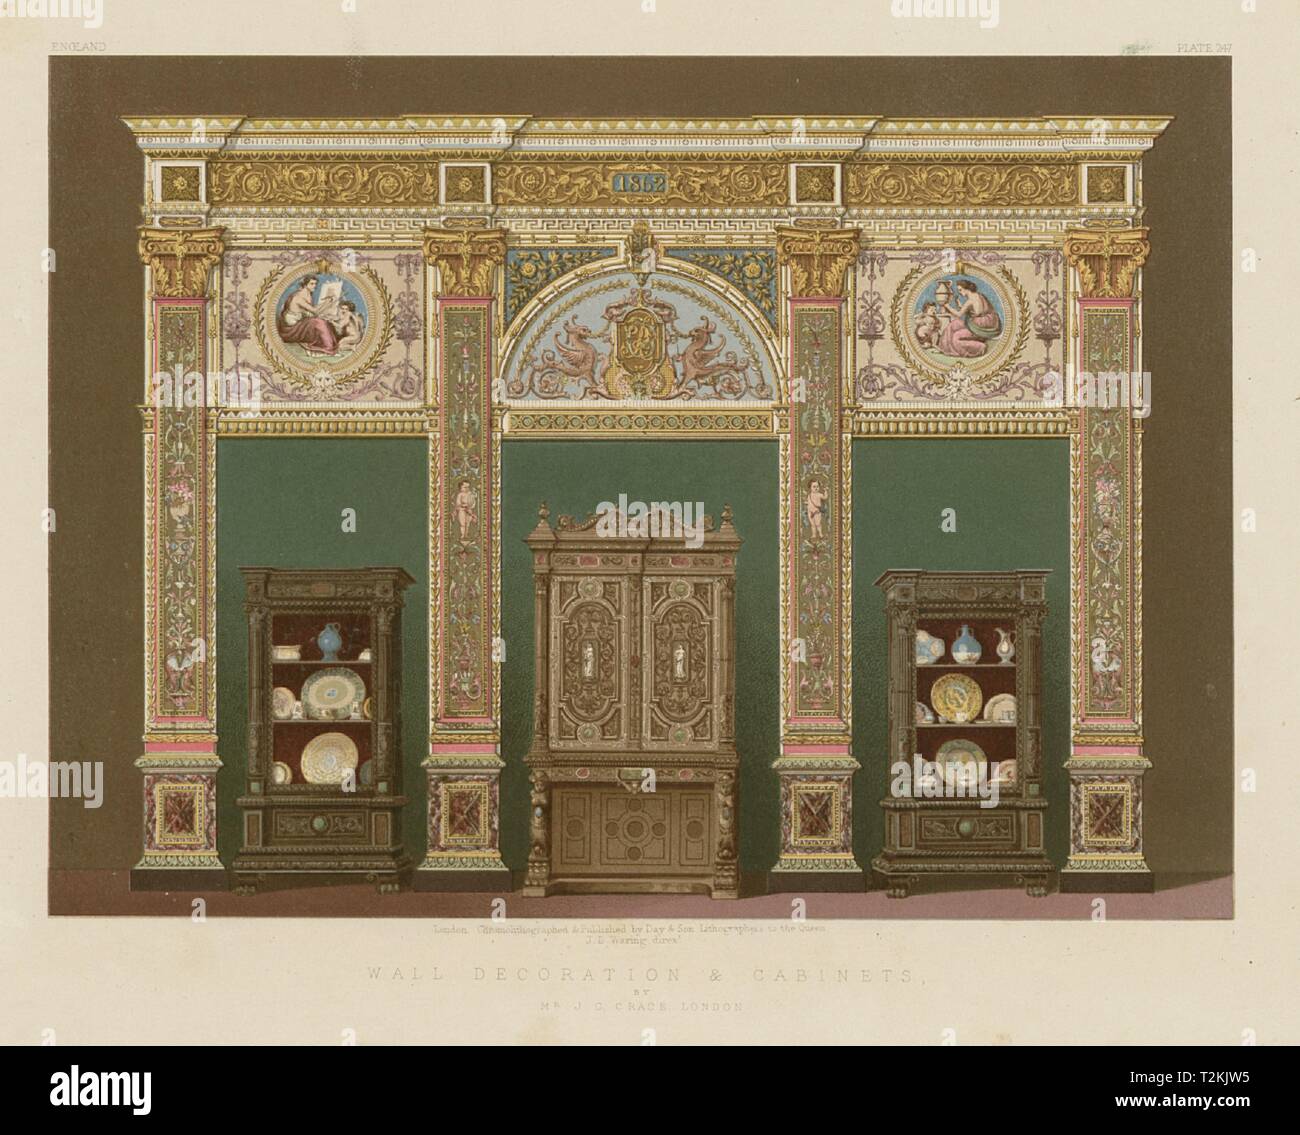 Exposición internacional. Decoración de paredes y armarios. J C Crace,  Londres 1862 Fotografía de stock - Alamy